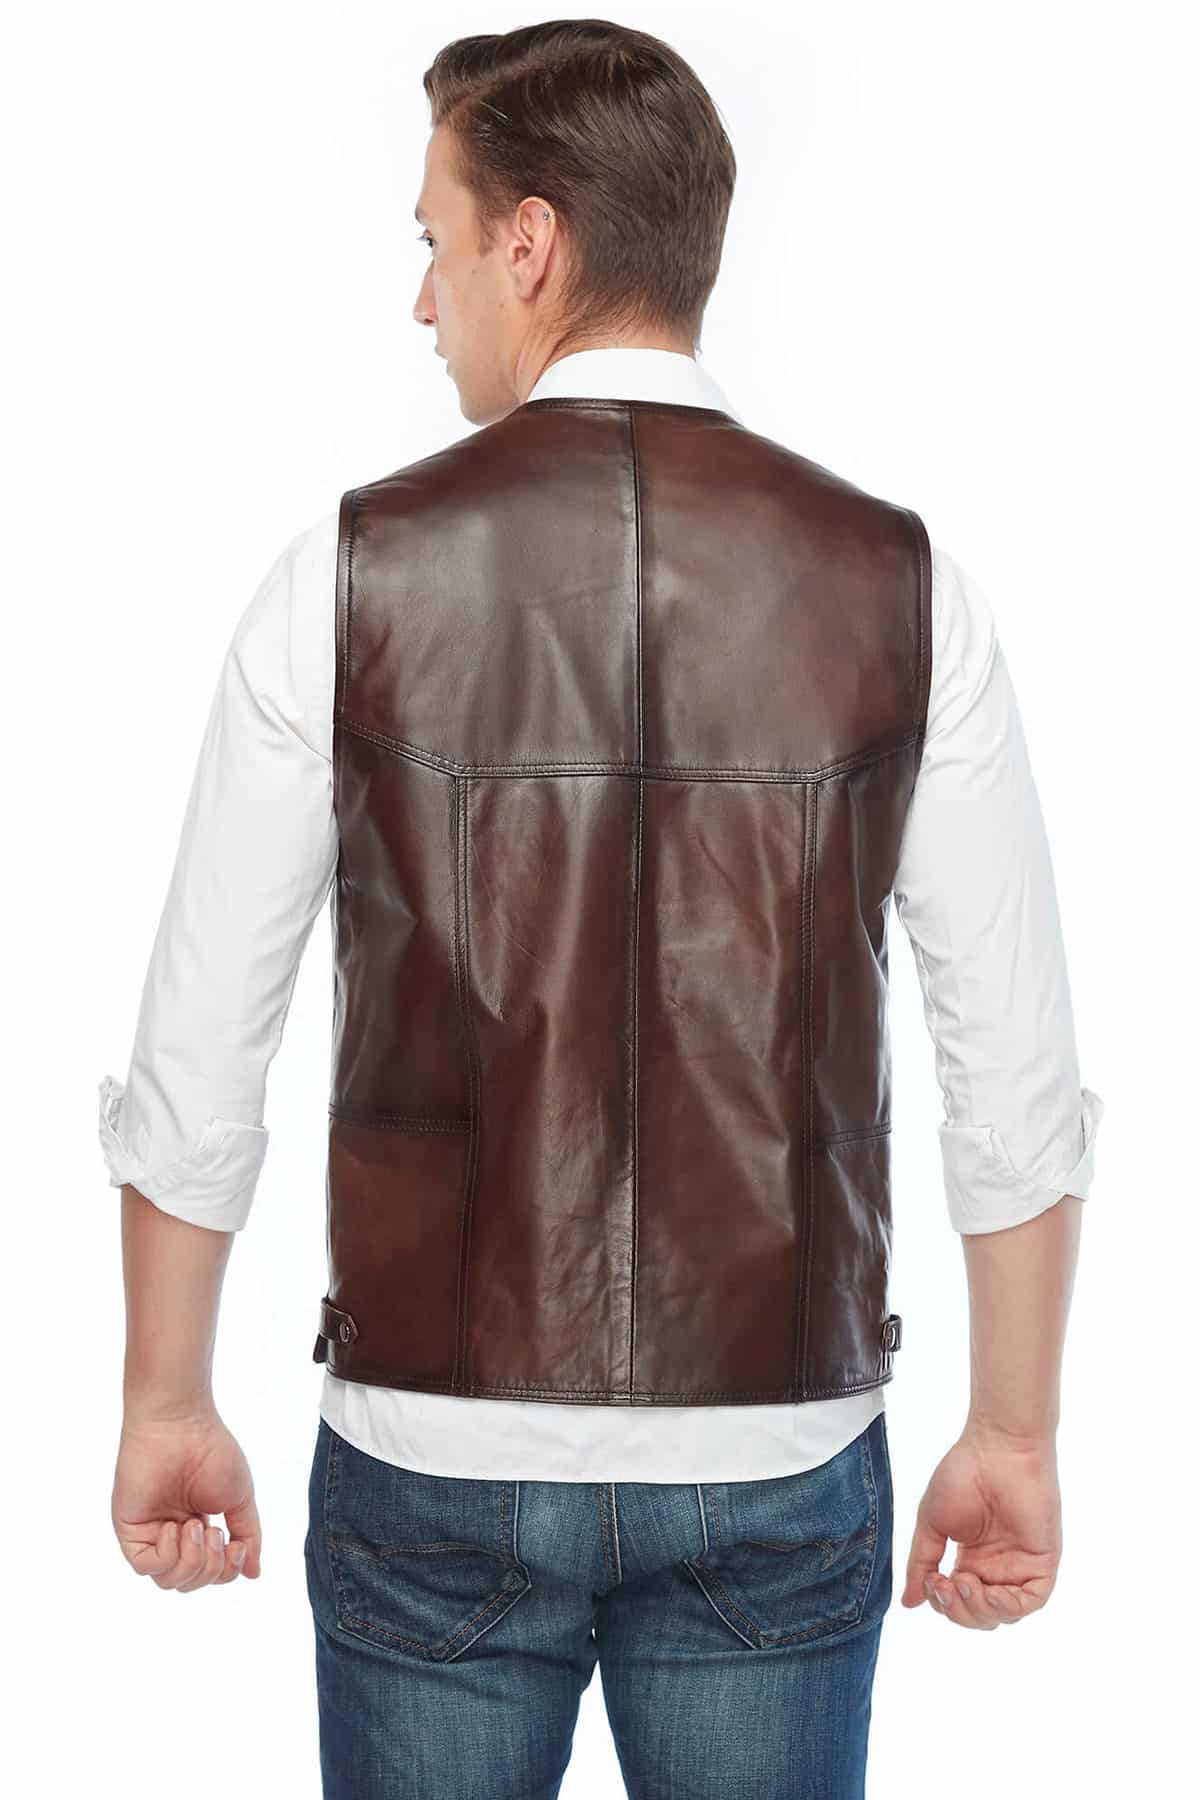 Oliver Goodwill Brown Men’s Leather Vest Coat Back